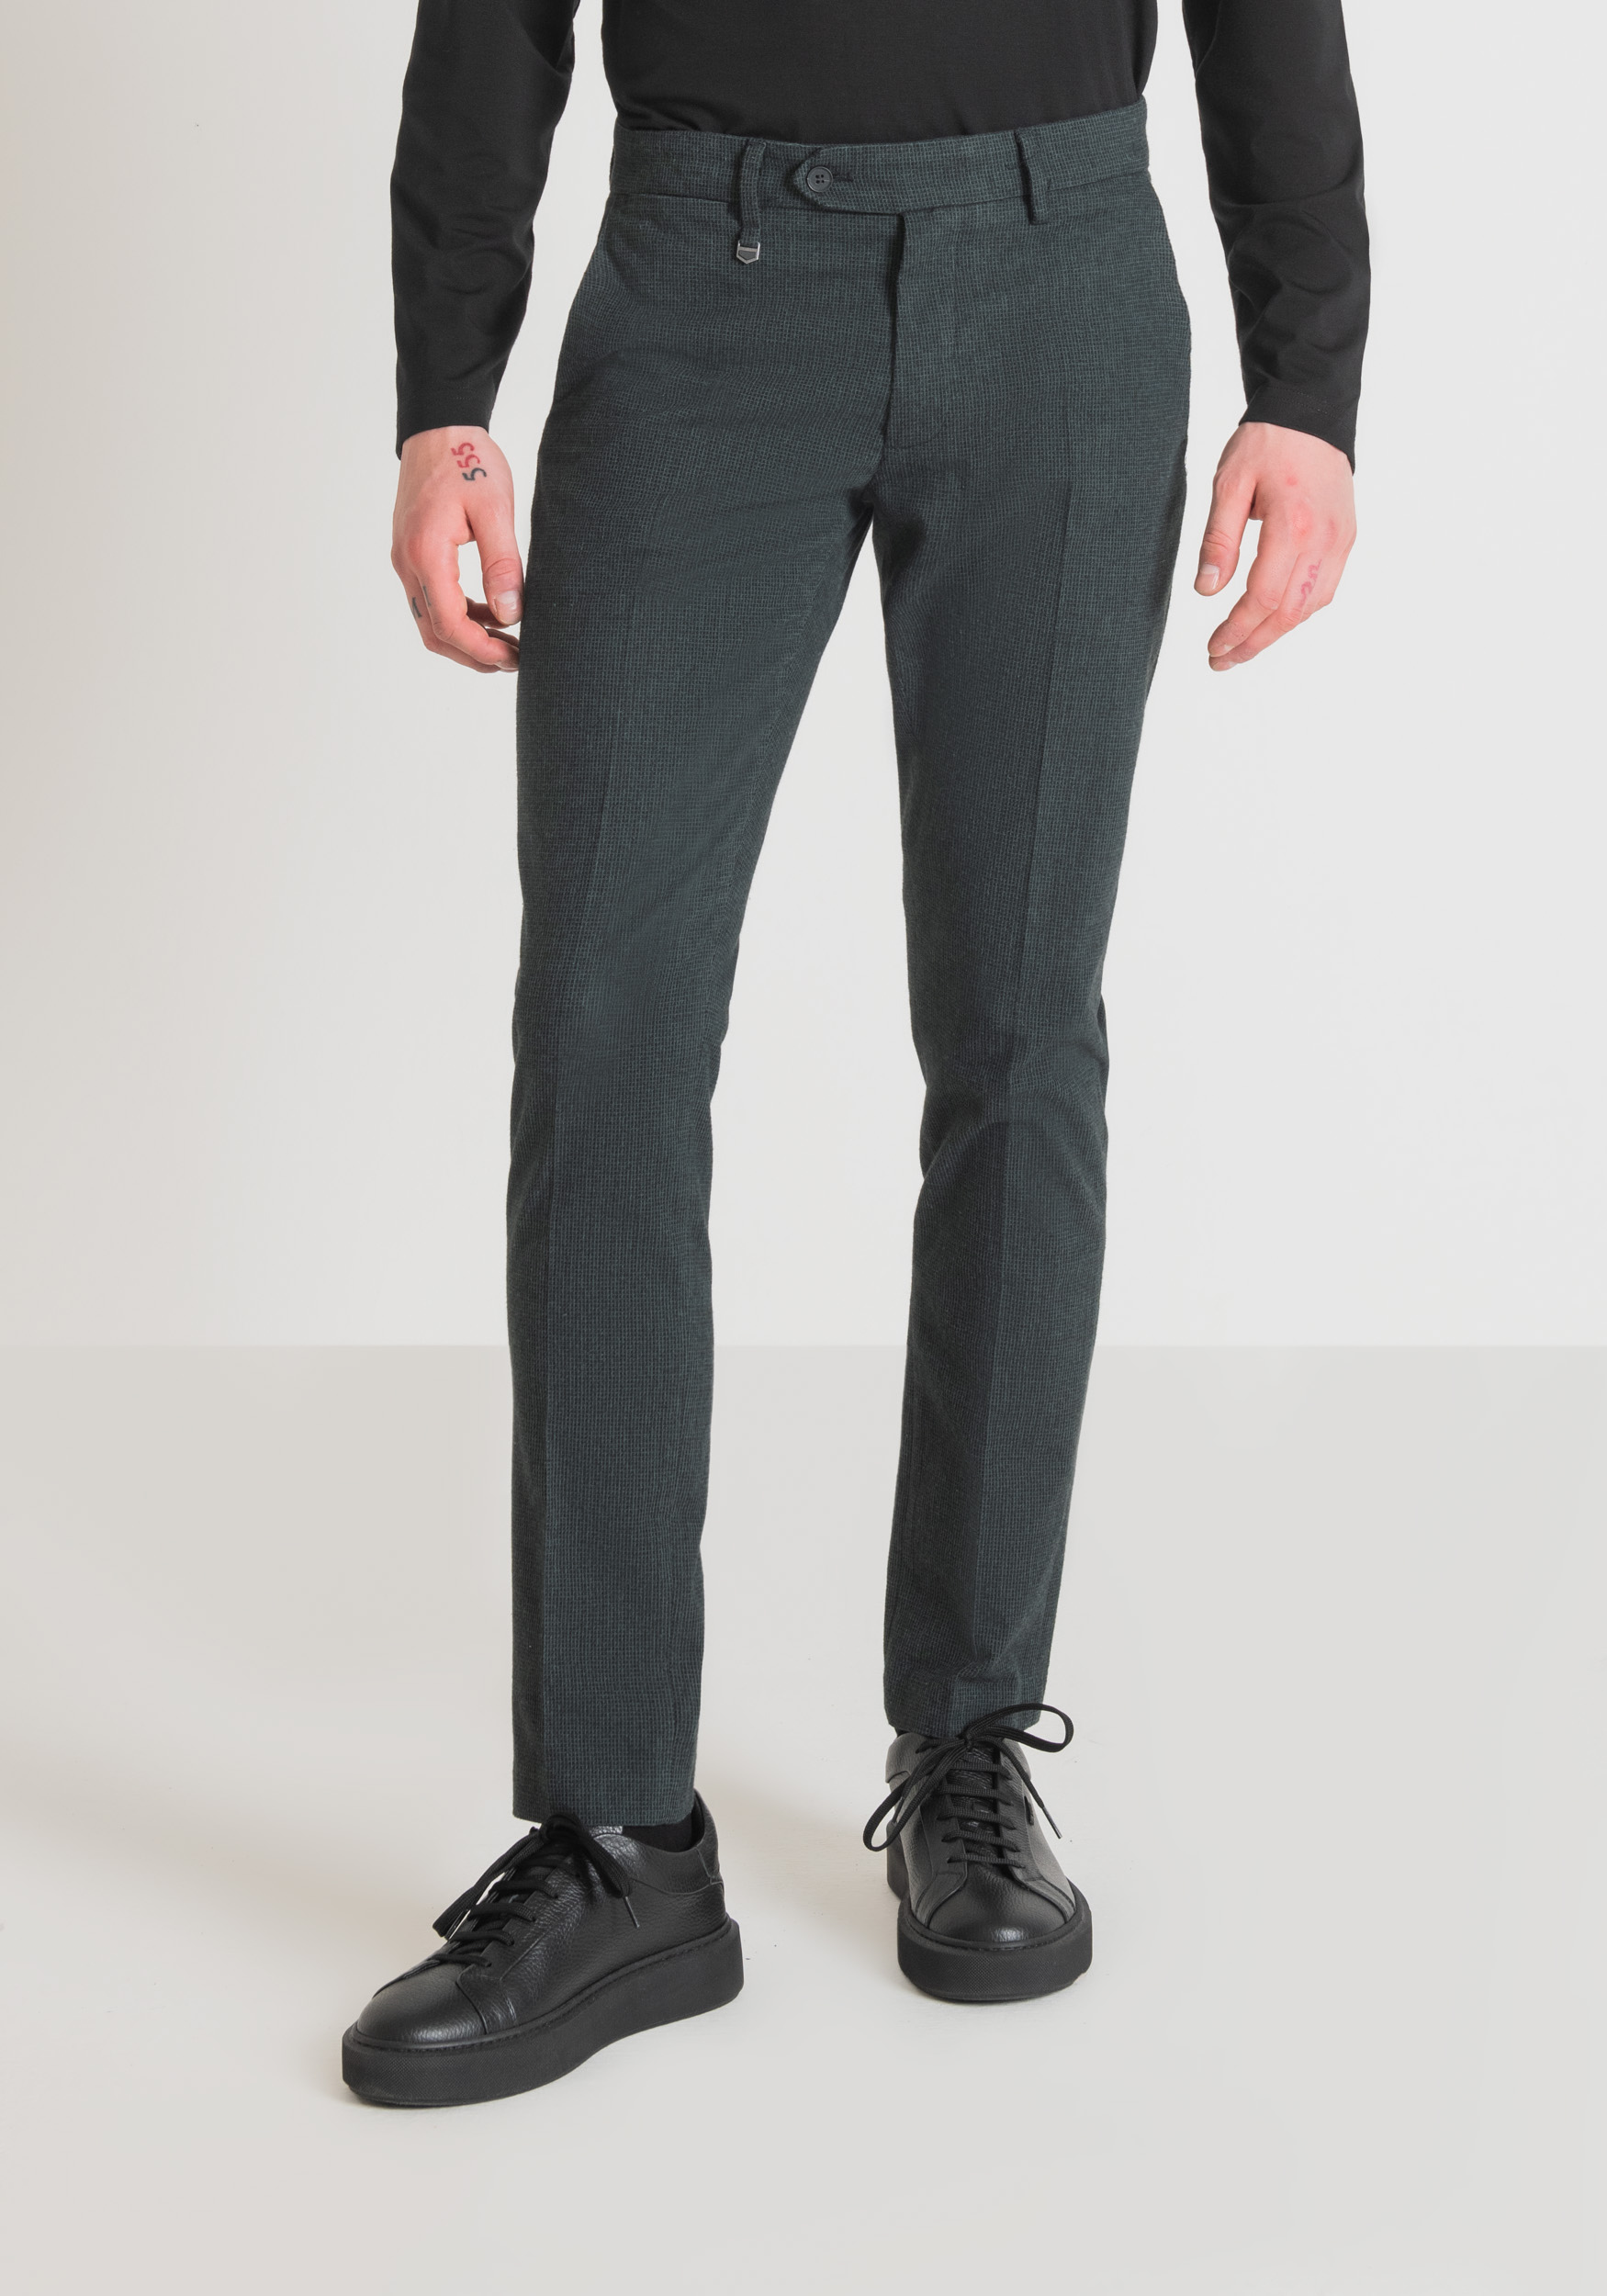 Antony Morato Pantalon Skinny Fit Bryan En Coton Melange Armure Elastique Bouteille Verte | Homme Pantalons